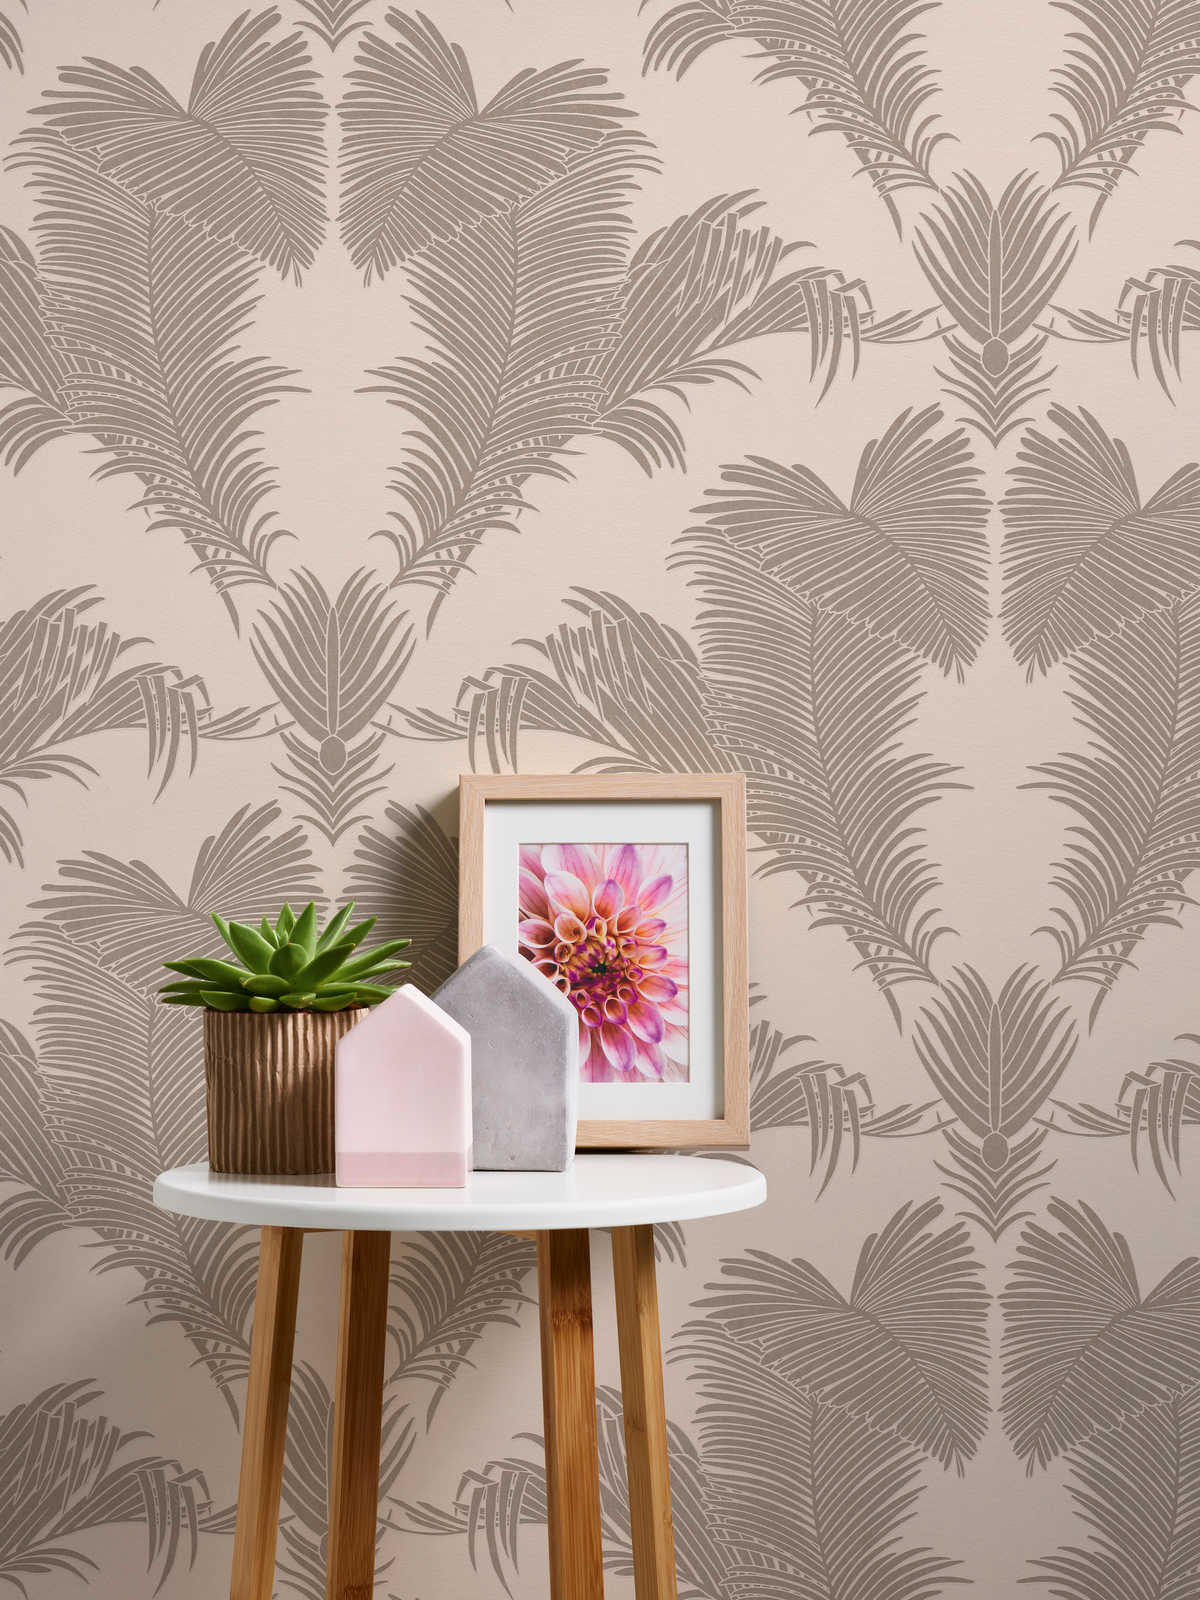             Papel pintado de hojas de palmera rosa con efecto metálico y mate
        